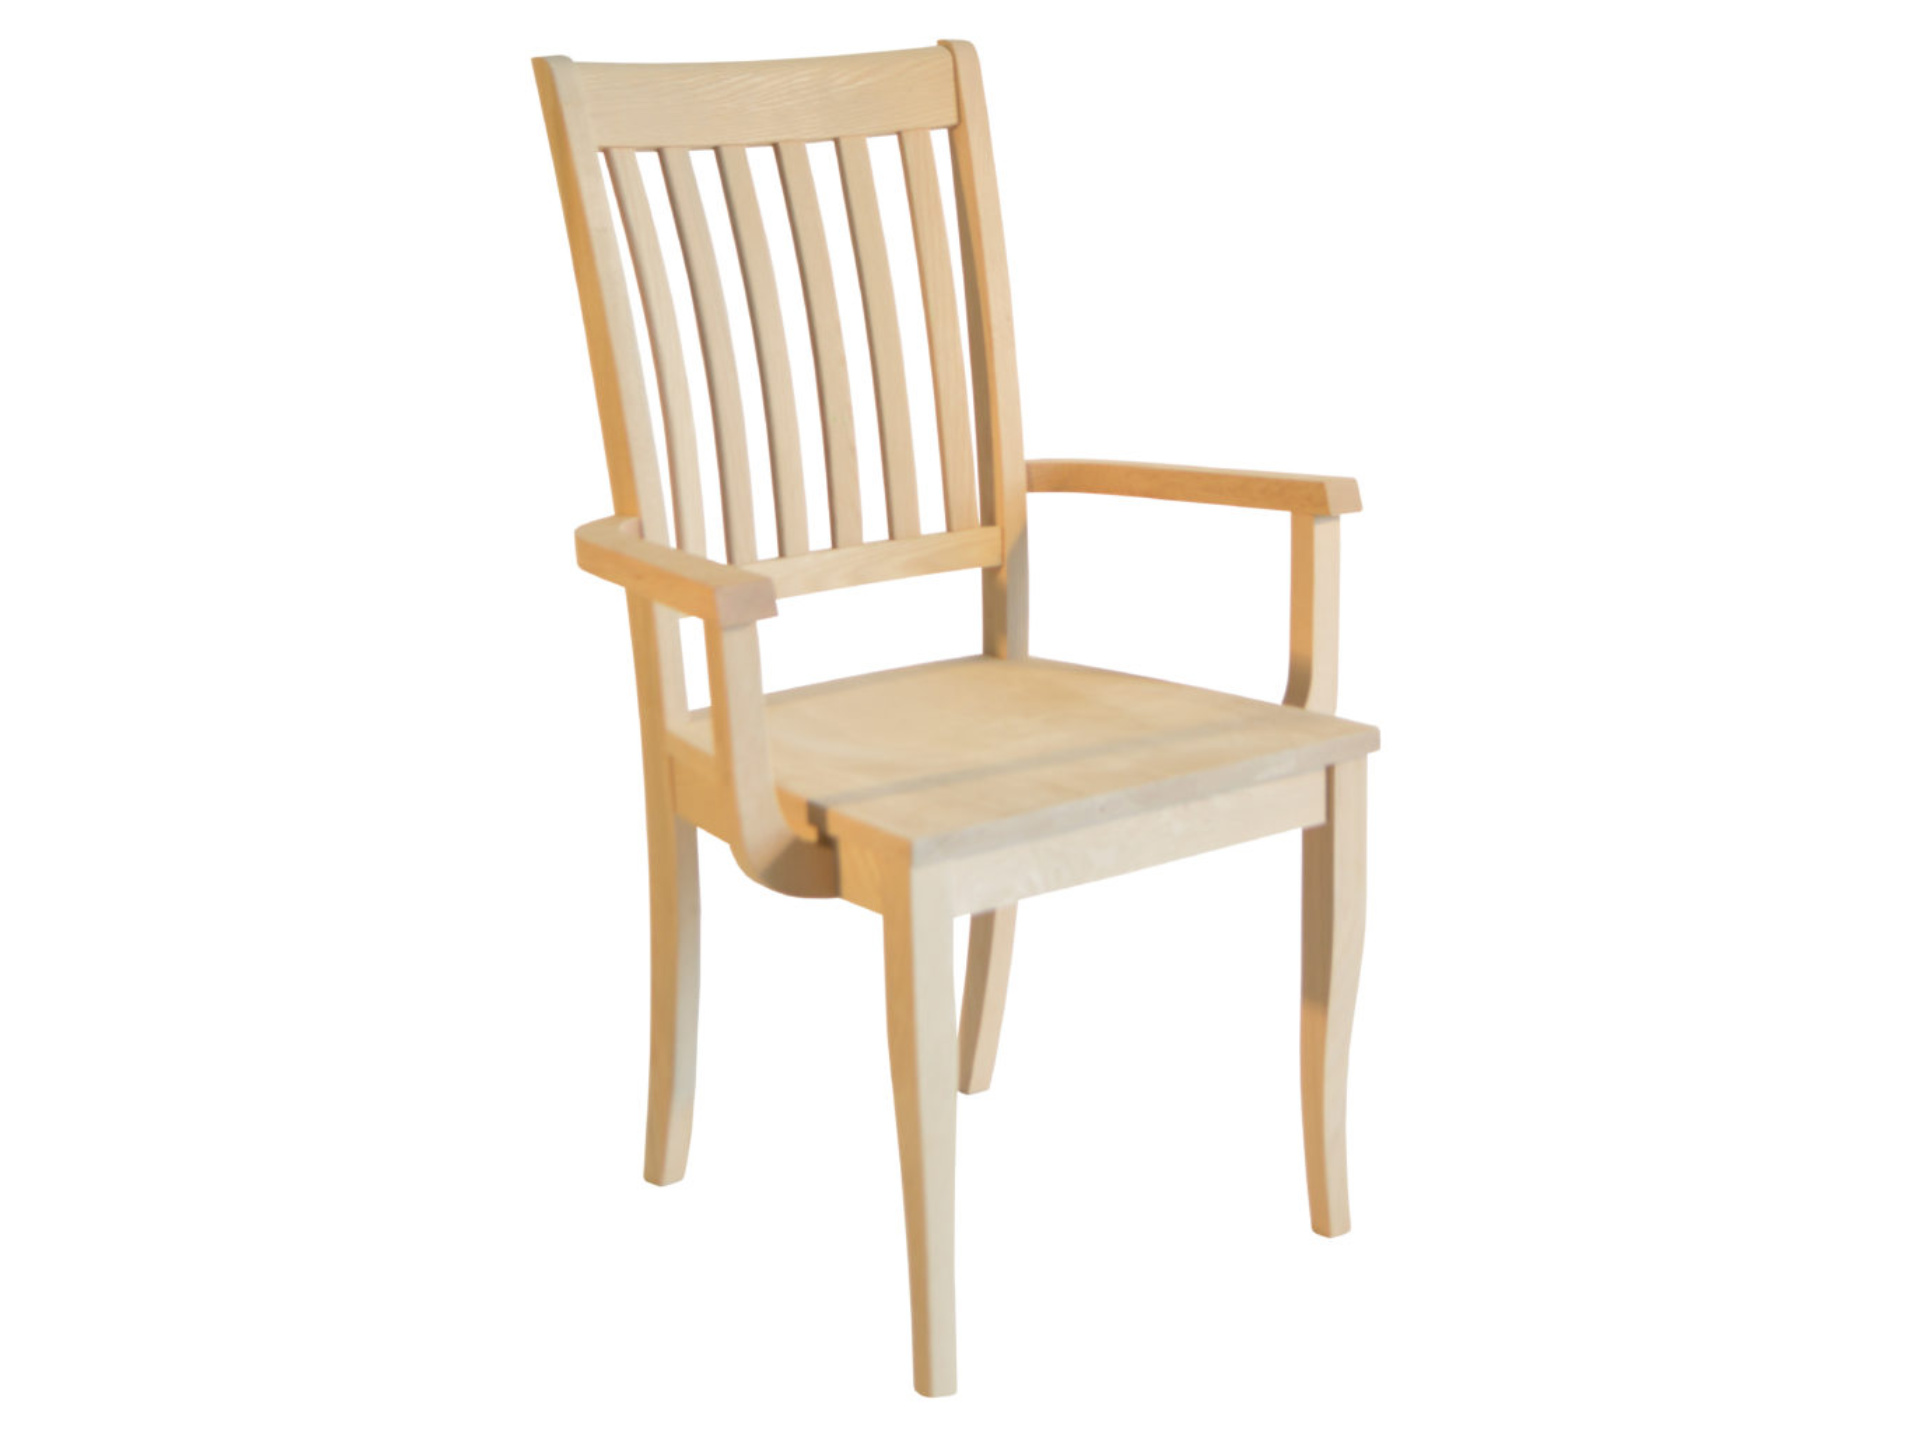 27a. Homedale Arm Chair